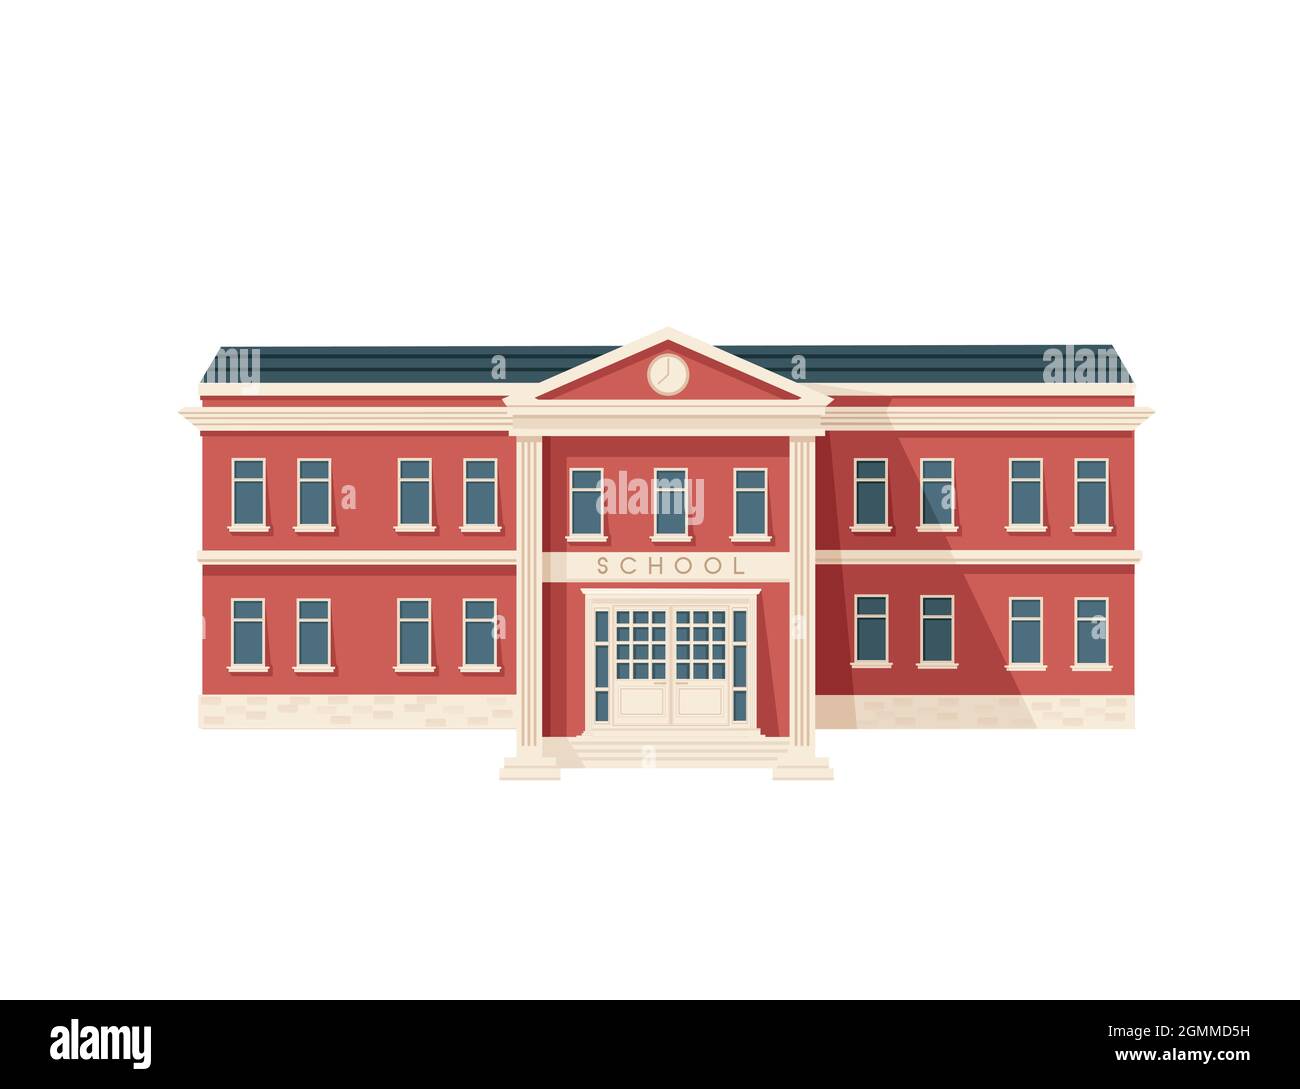 Rouge couleur classique USA architecture bâtiment école illustration vectorielle sur fond blanc Illustration de Vecteur